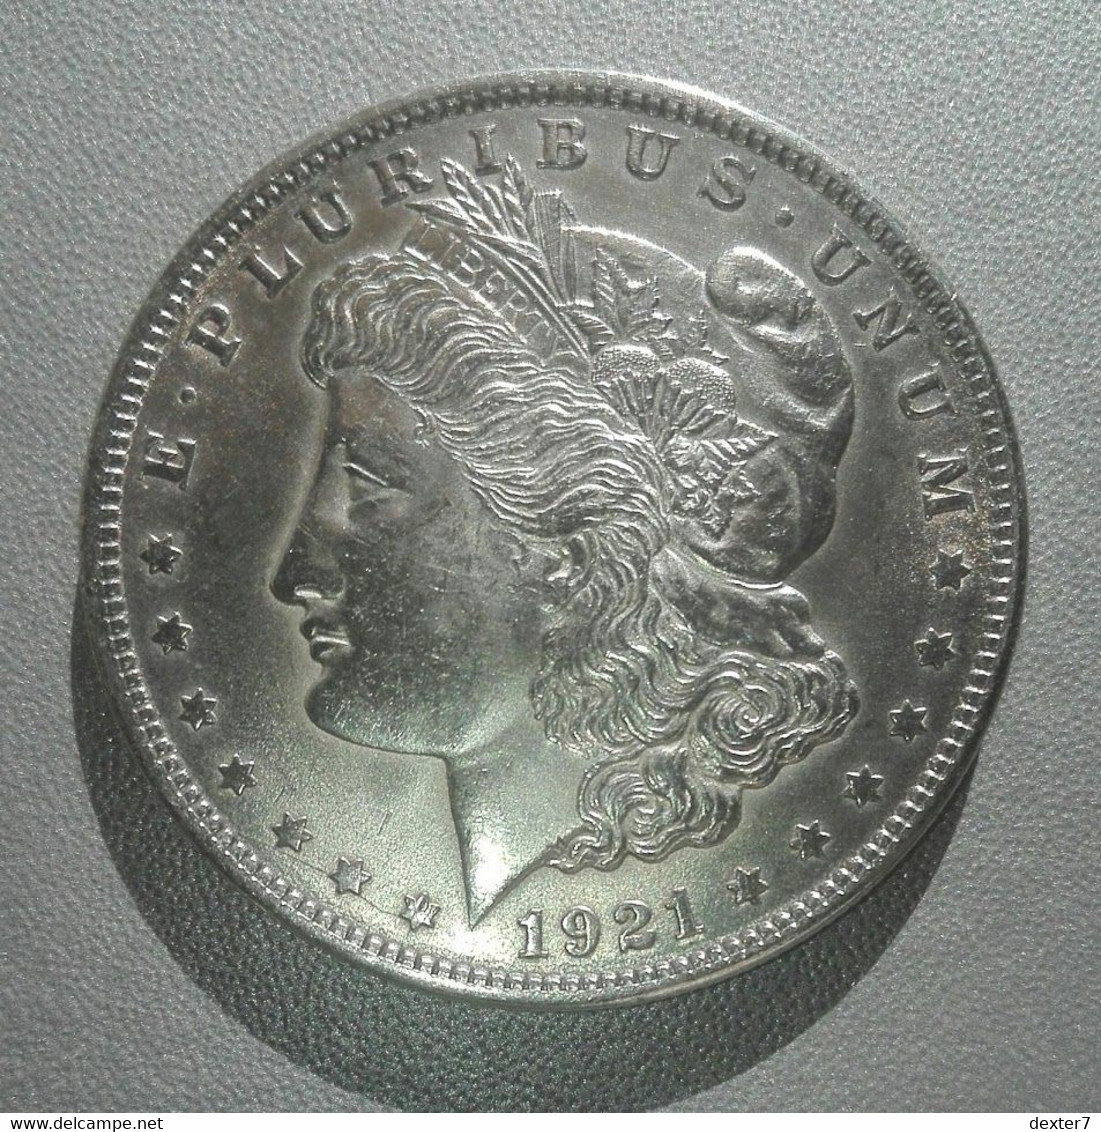 USA Stati Uniti 1 Dollaro 1921 Argento - United States Dollar Morgan [3] - 1878-1921: Morgan